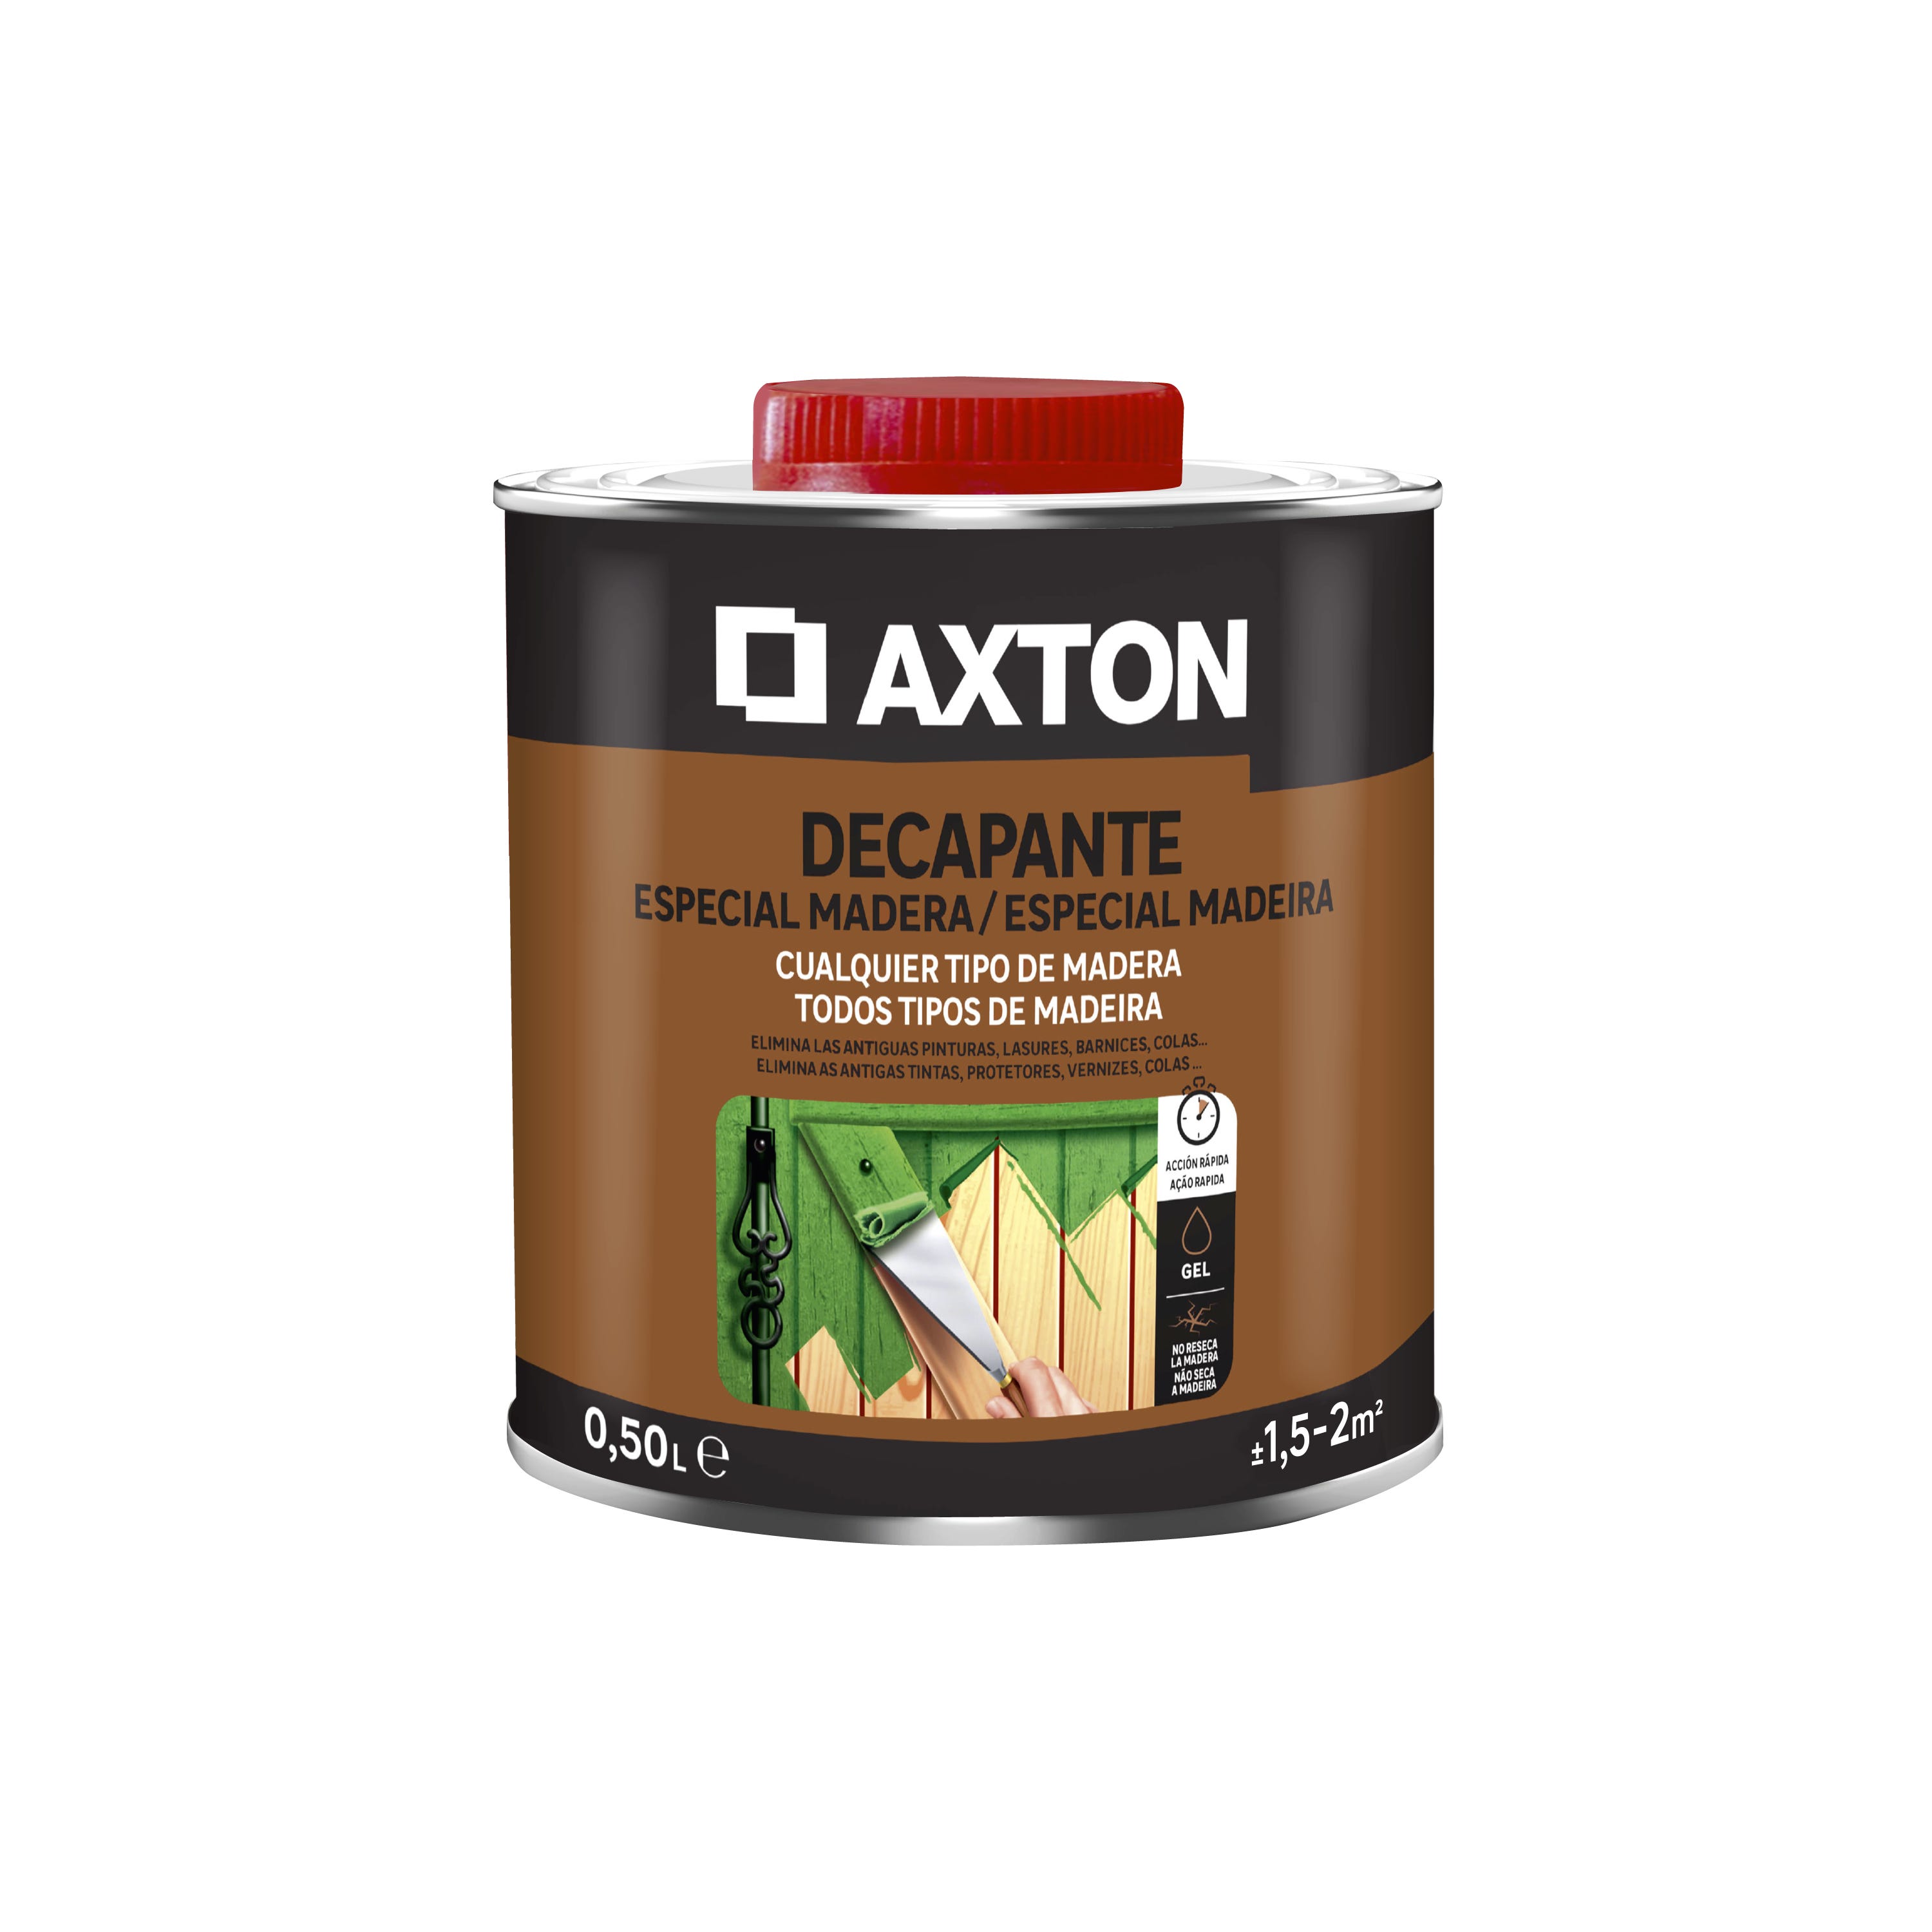 Decapante especial madera AXTON 0,5l